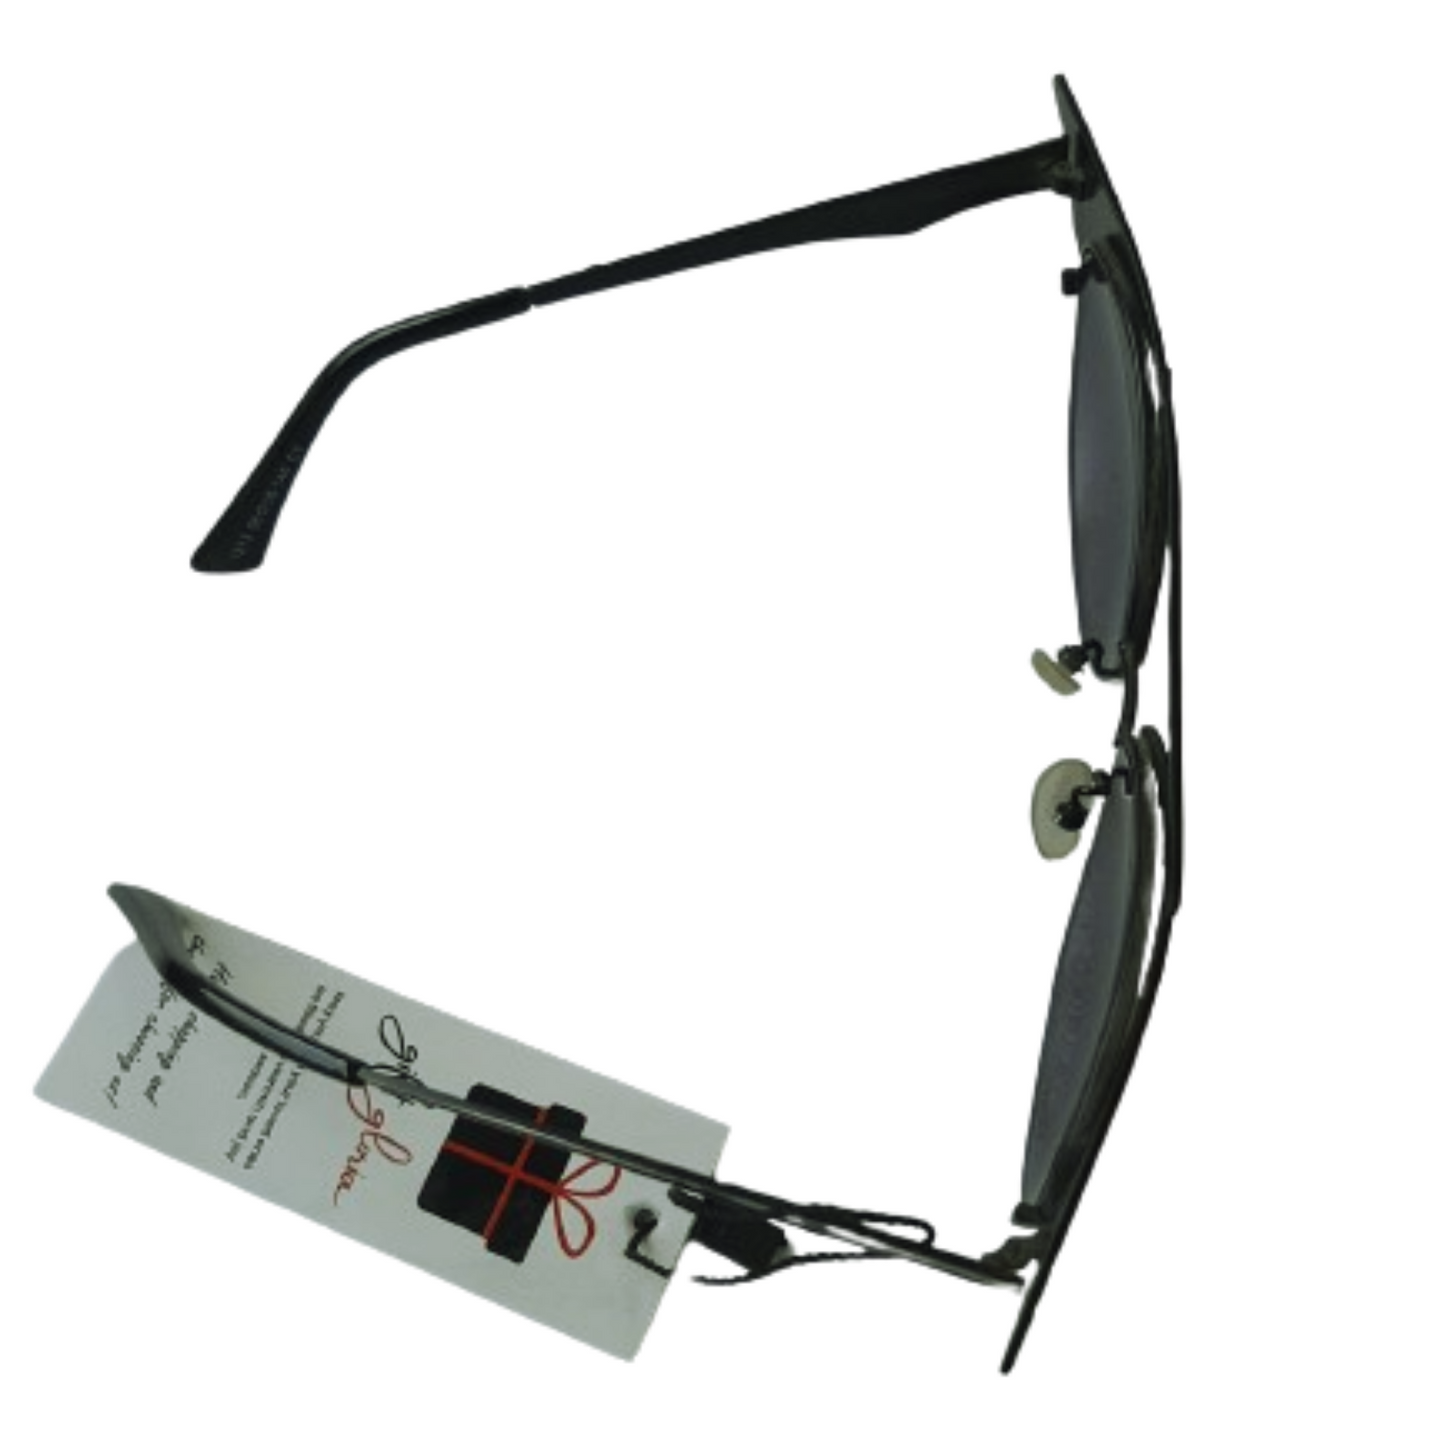 Cat-Eye- Sunglasses For women